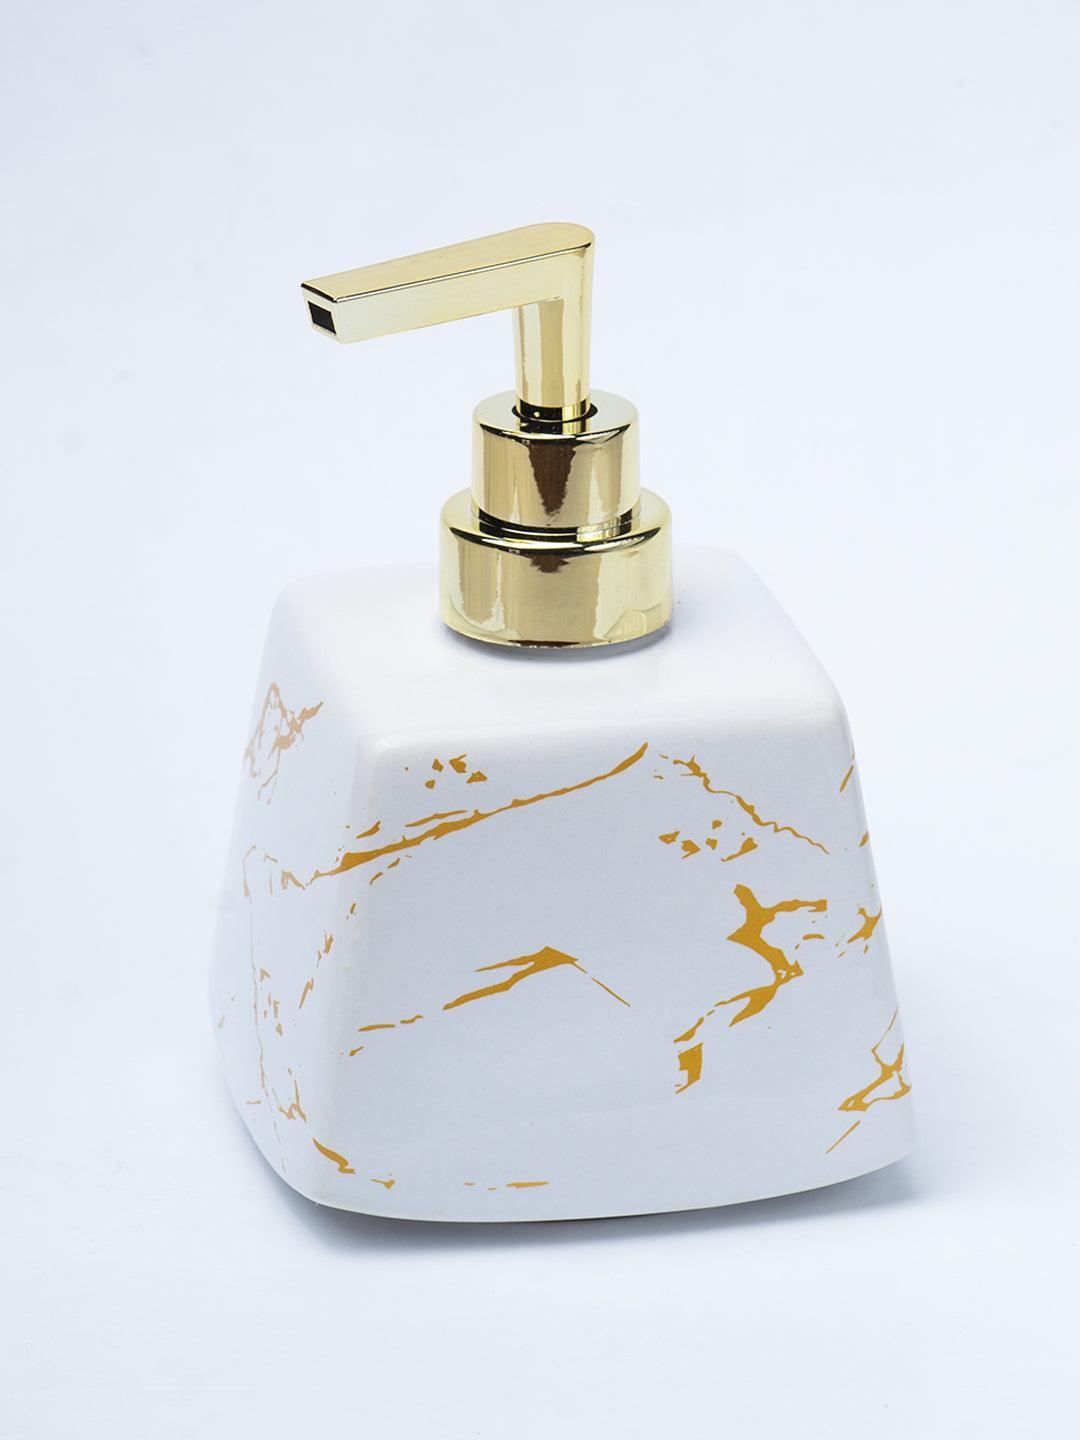 White Ceramic Soap Dispenser - Stone Finish, Bath Accessories - 3